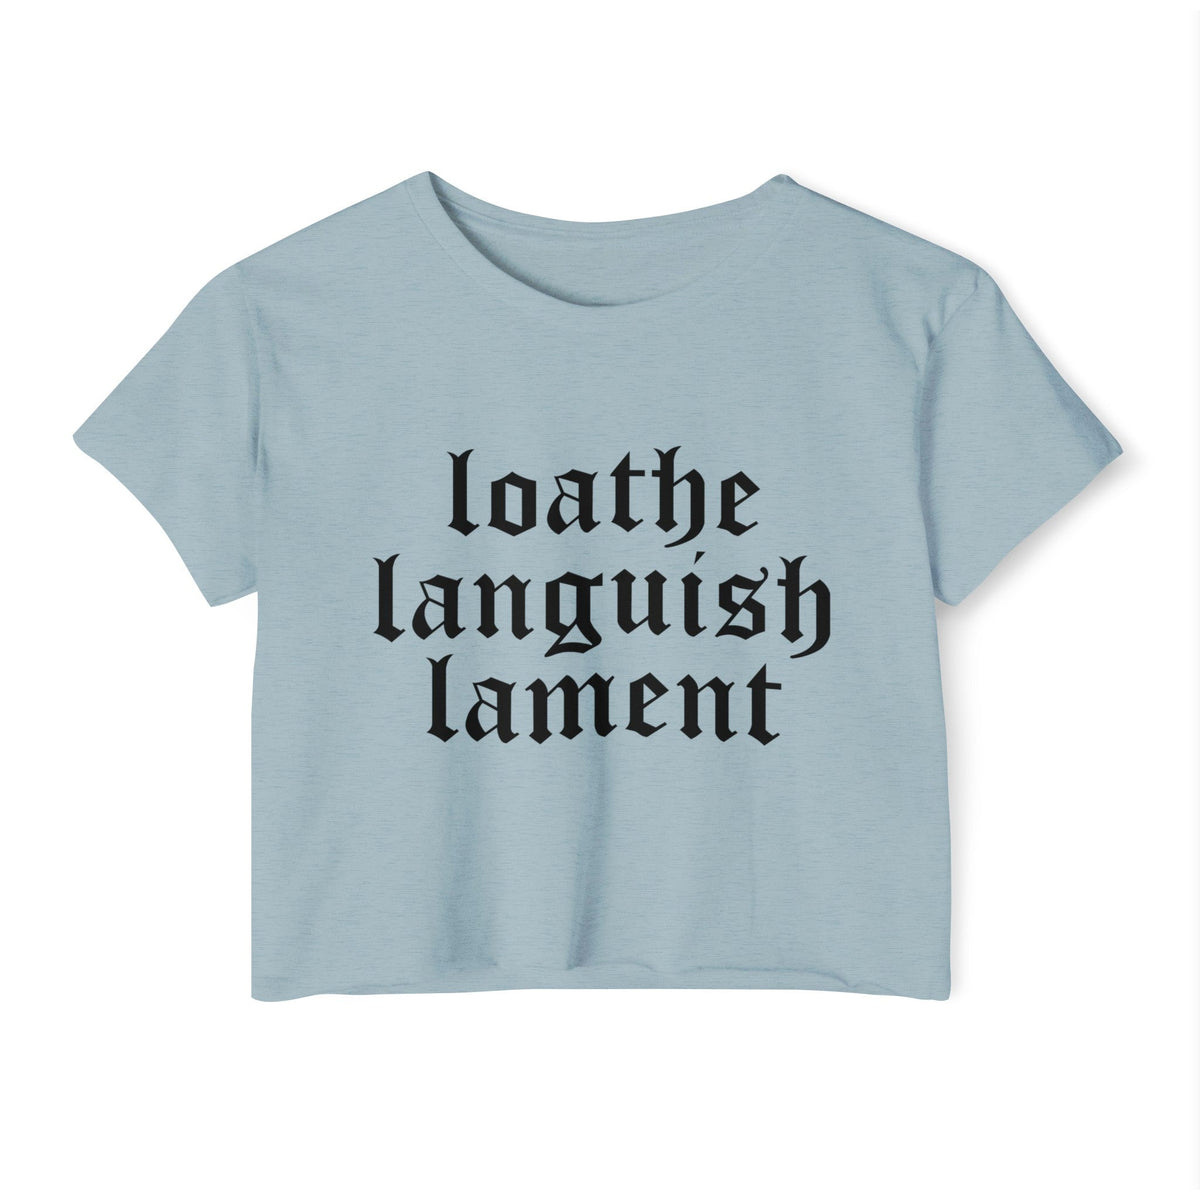 Loathe Languish Lament Women's Lightweight Crop Top - Goth Cloth Co.T - Shirt16540842950800305462